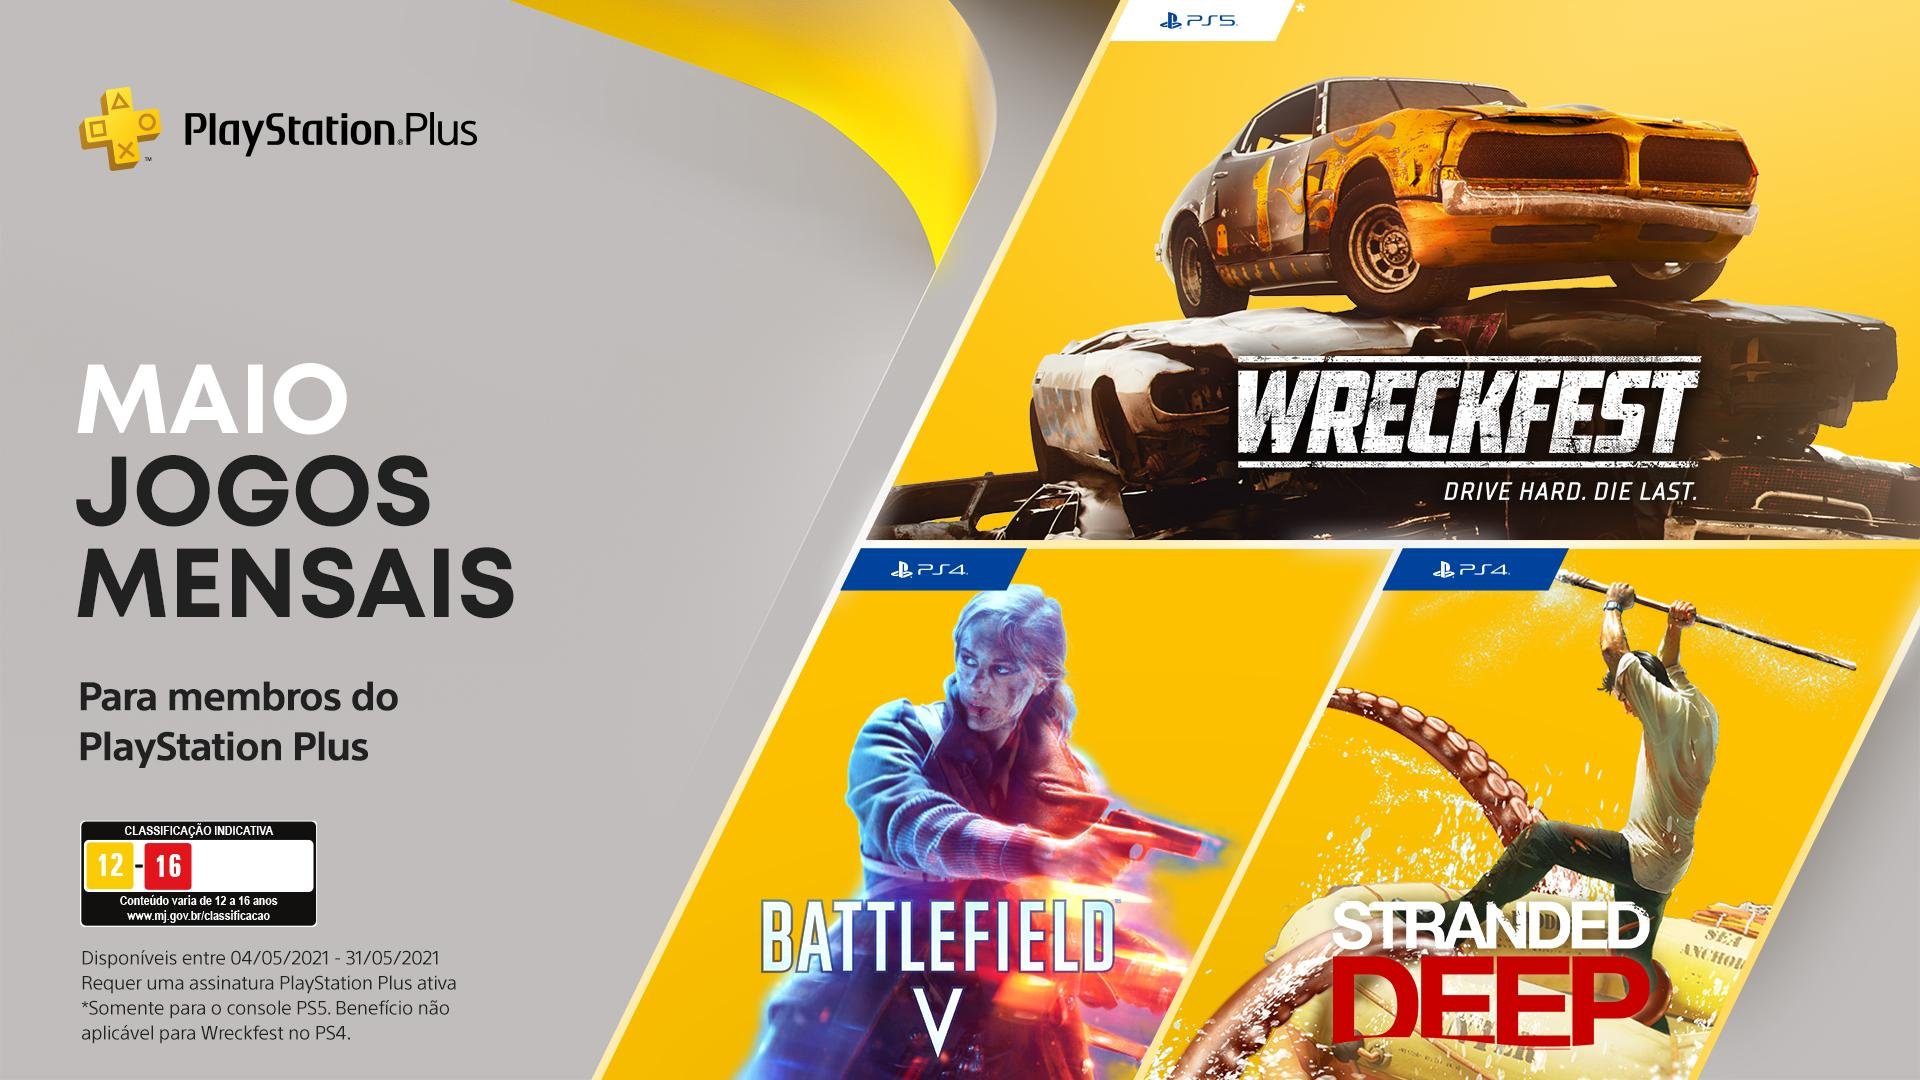 PlayStation Plus: Days Gone e muito mais nos jogos gratuitos de abril -  Canaltech